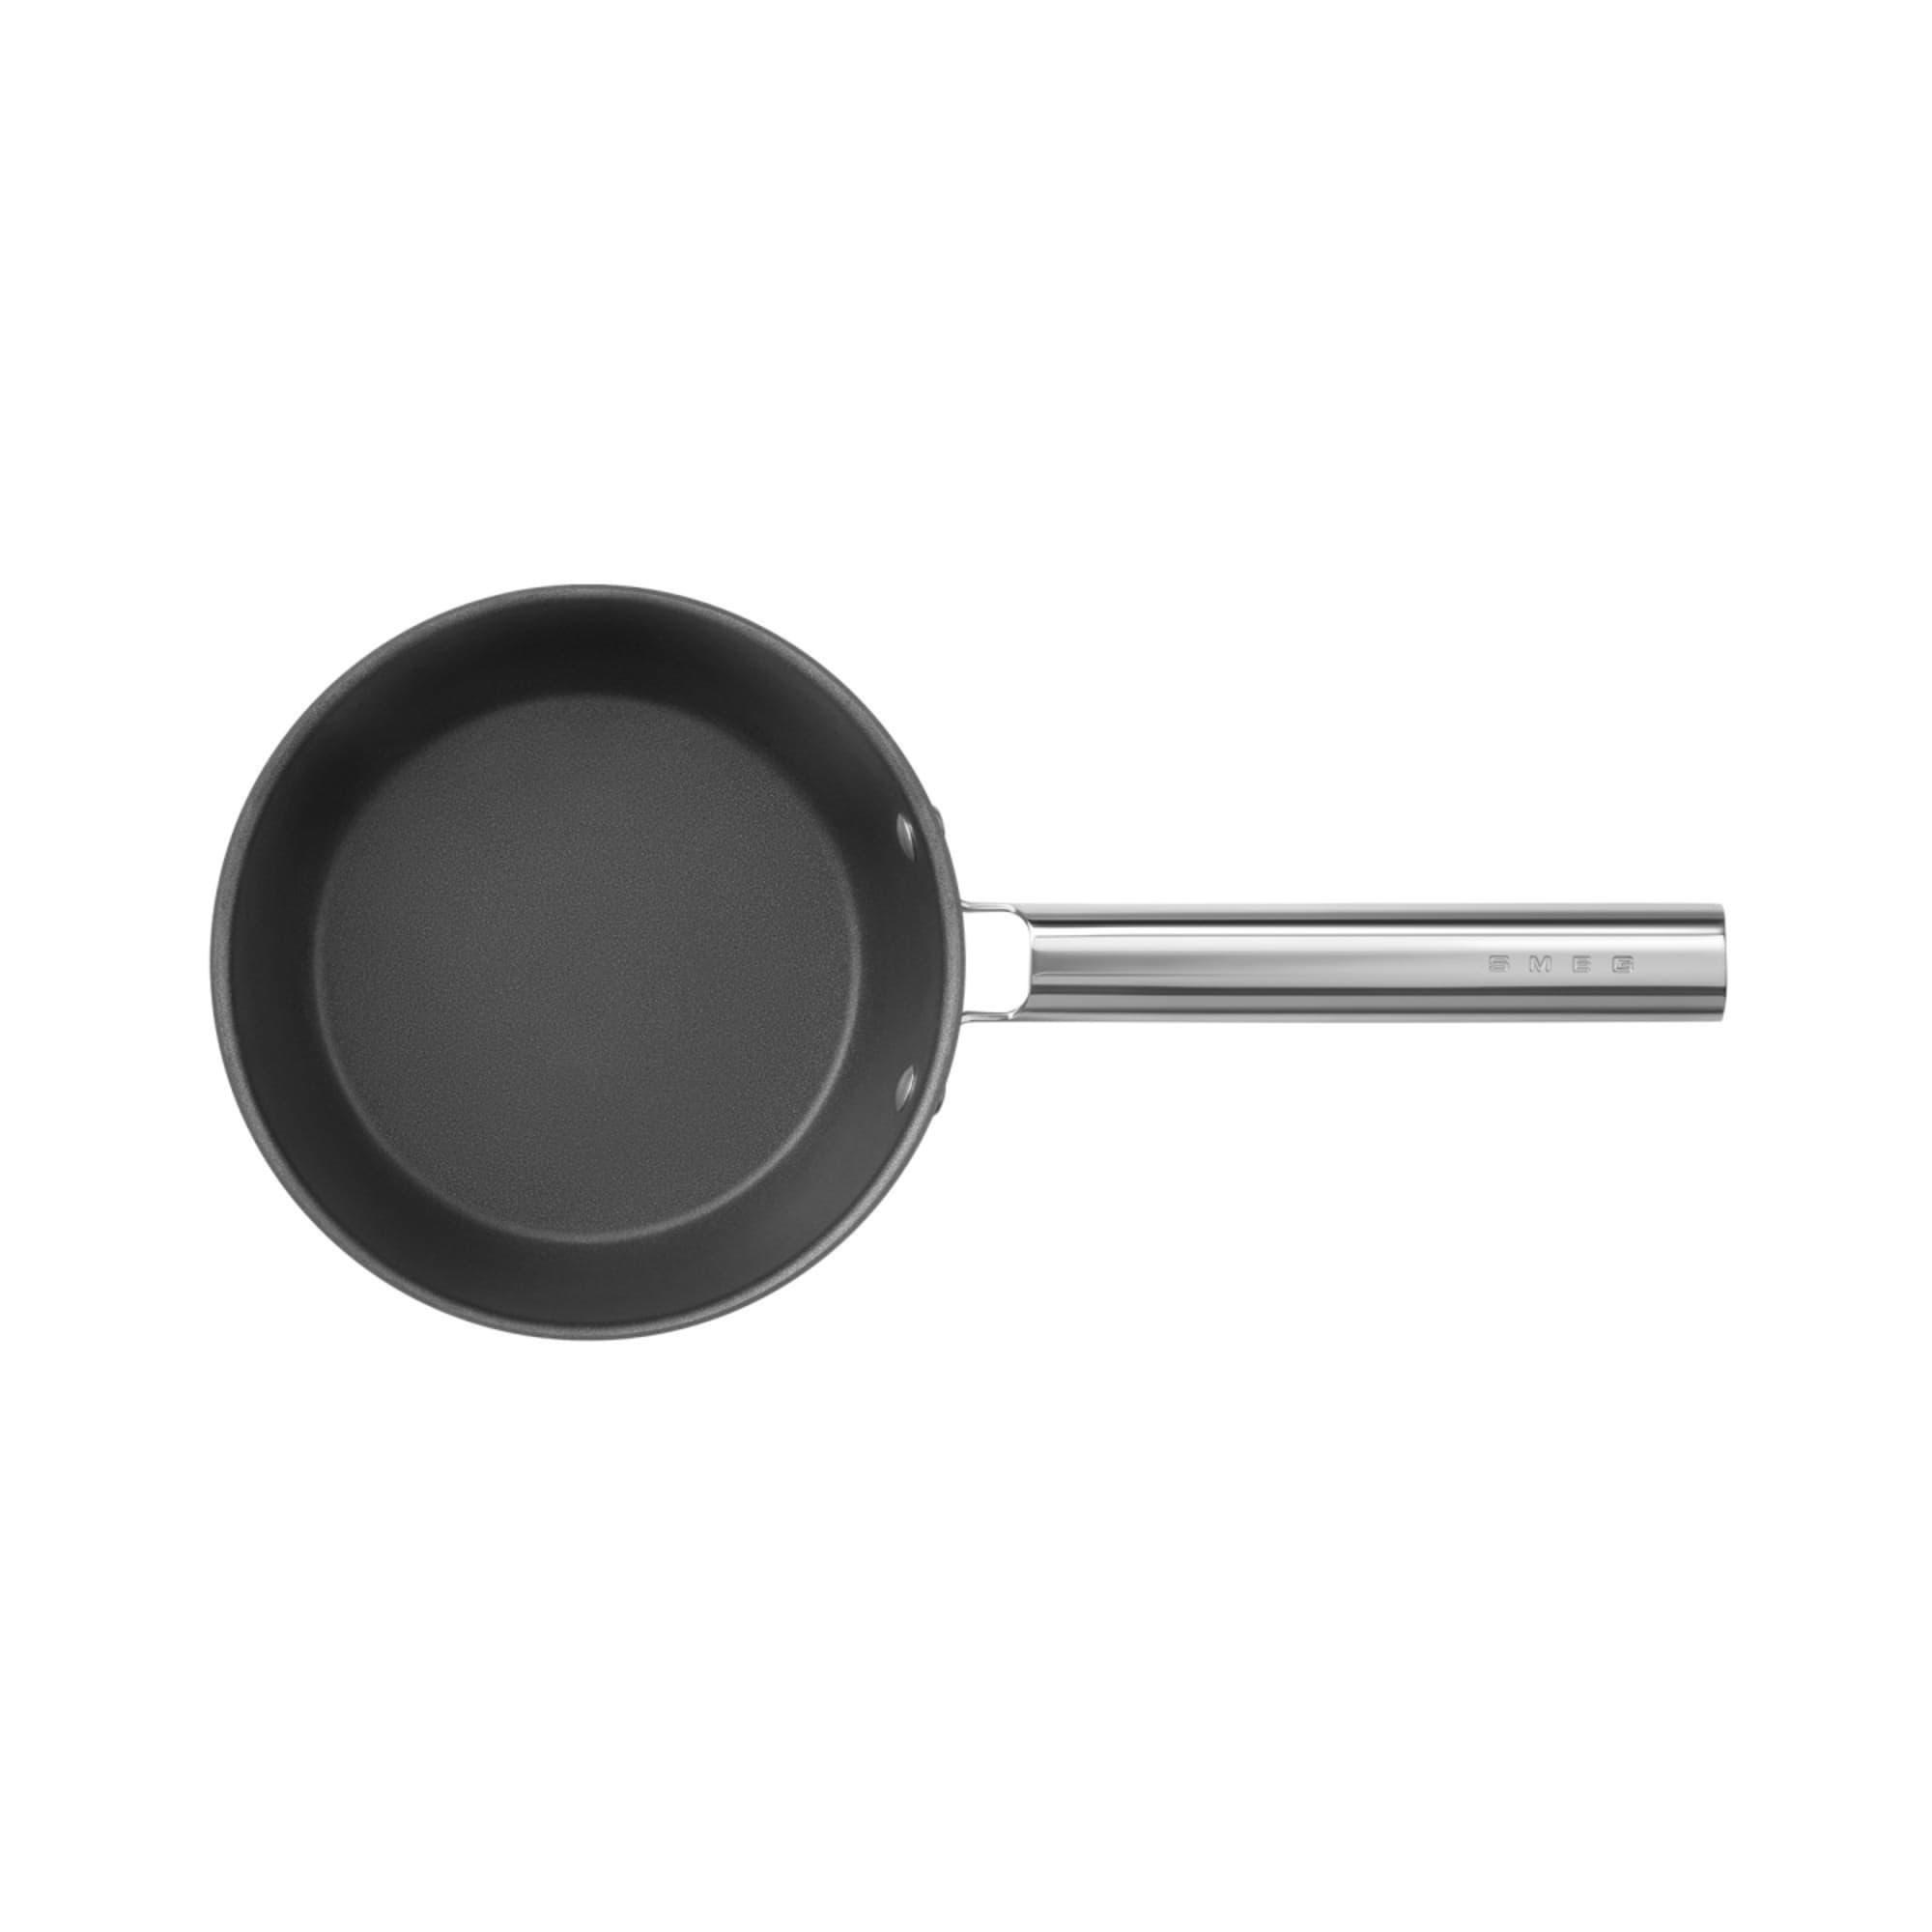 Smeg Non Stick Saucepan with Lid 20cm - 2.7L Black Image 8